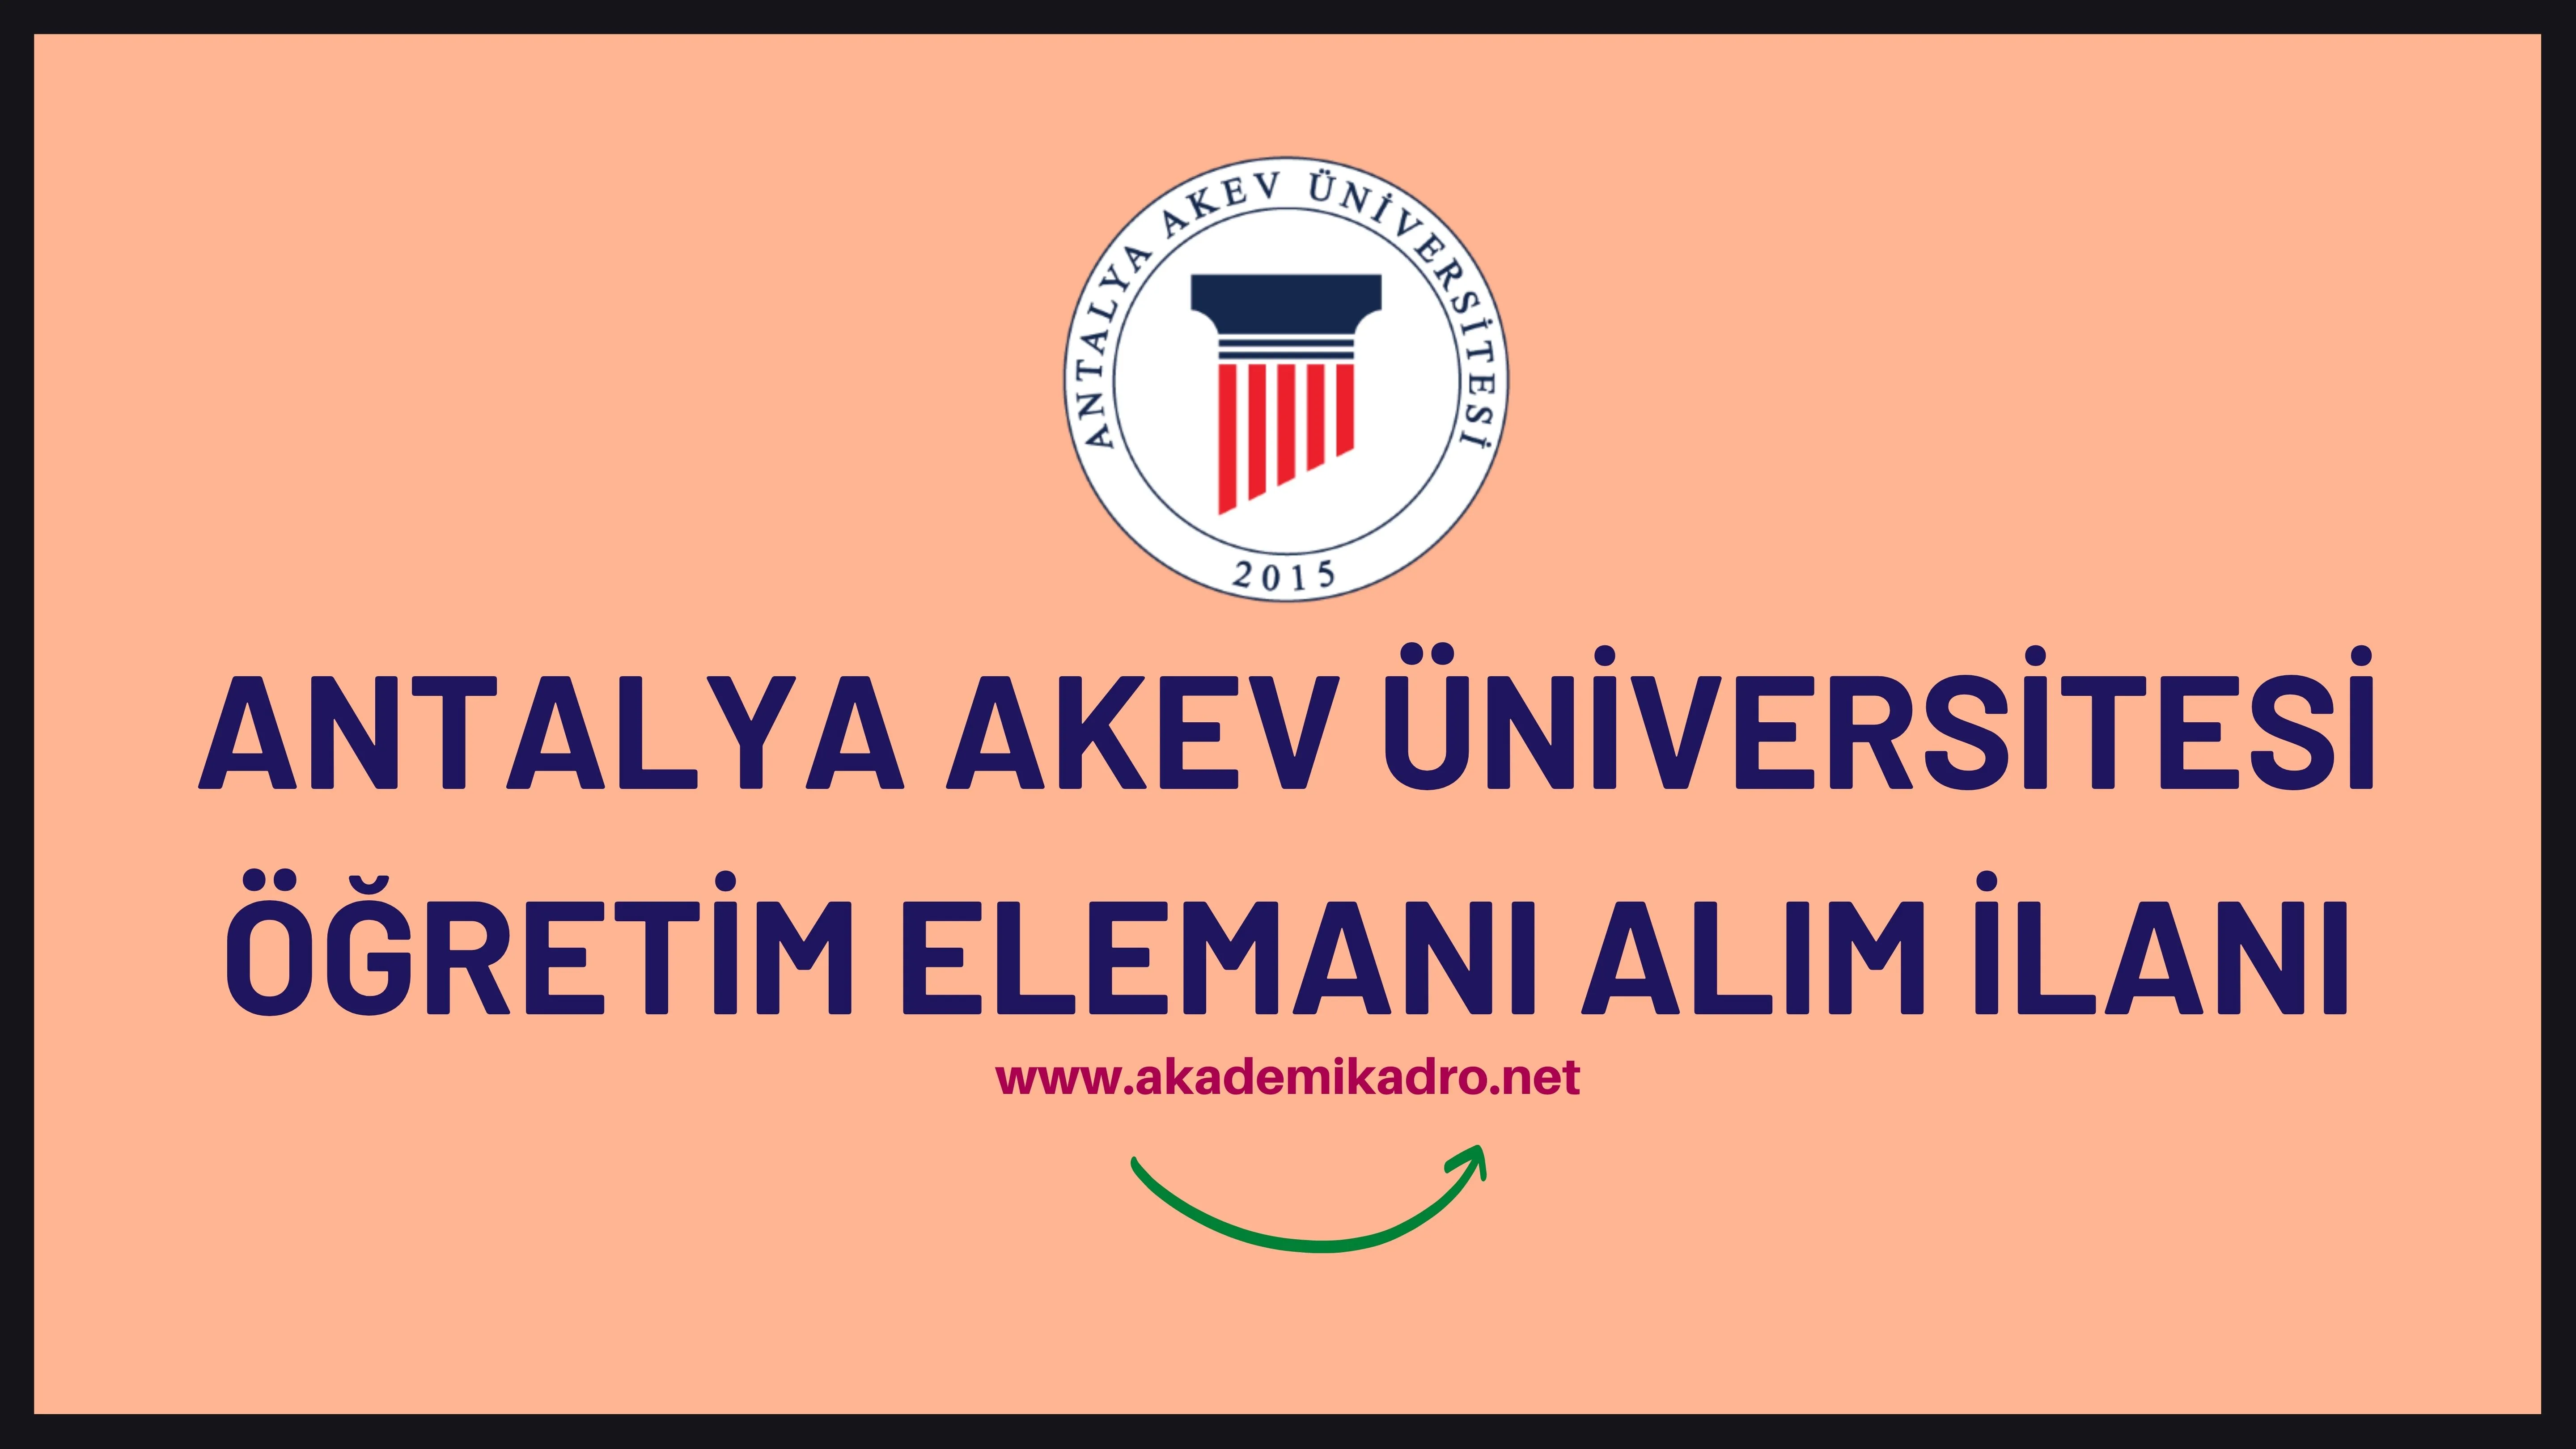 Antalya Akev Üniversitesi 26 Eylülde ilan edilen tüm ilanları iptal etti.